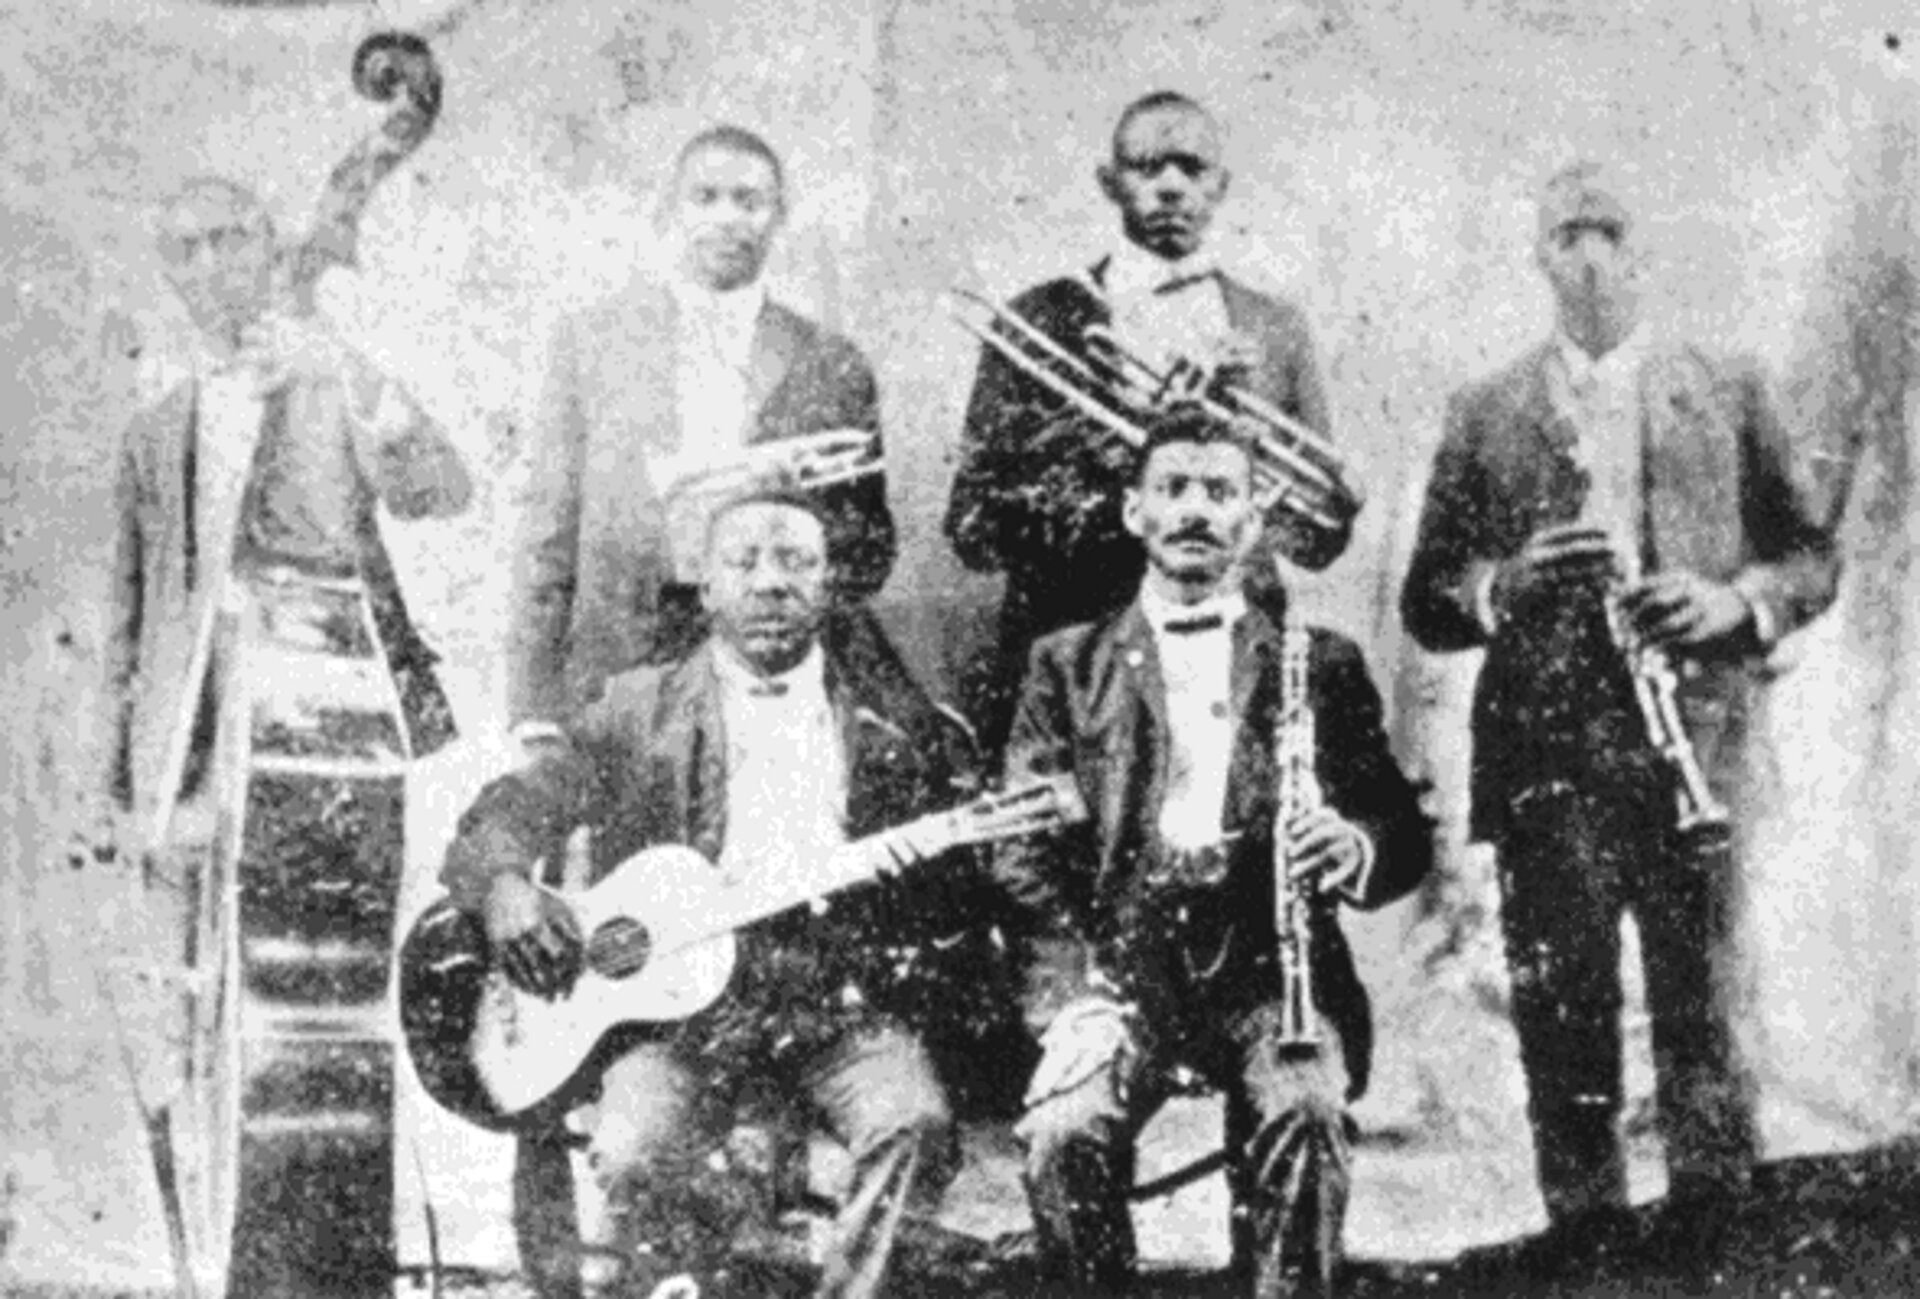 Ilustracja przedstawia sześciu mężczyzn z intrumentami - stoją: Jimmy Johnson (kontrabas), Buddy Bolden (kornet), Willy Cornish (puzon), Willy Warner (klarnet), siedzą: Brock Mumford (gitara), Frank Lewis (klarnet). Mężczyźni ubrani są w ciemne garnitury i białe koszule.